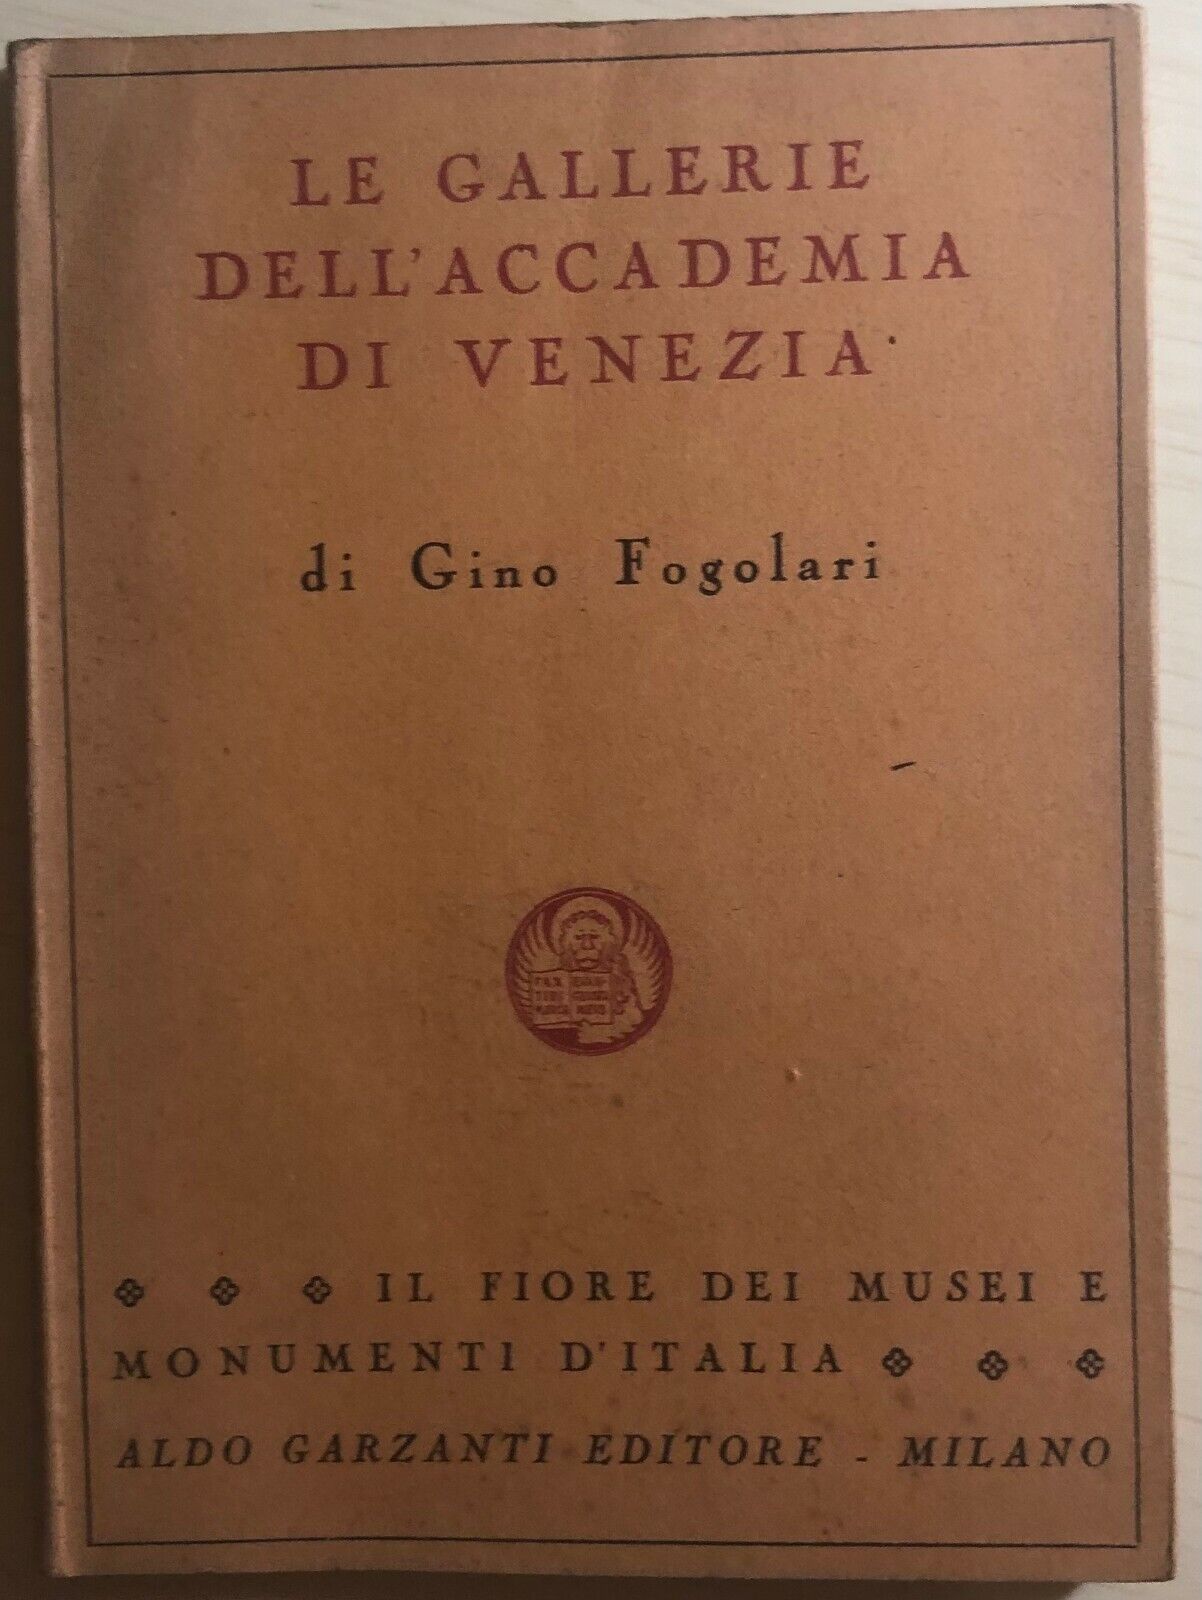 Le gallerie delL'accademia di Venezia di Gino Fogolari,  1949,  Aldo Garzanti Ed